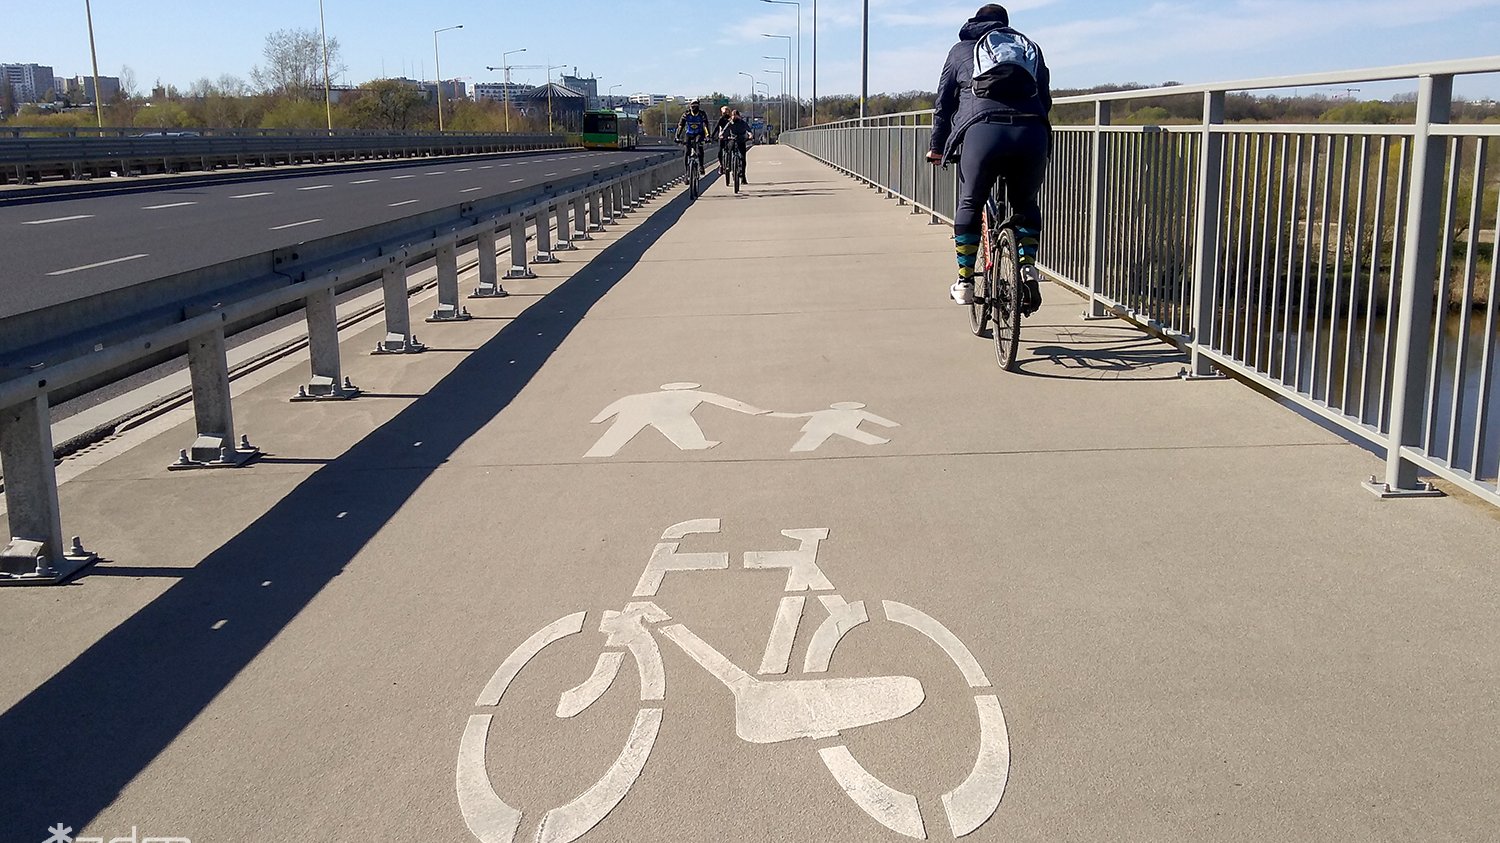 Zdjęcie drogi dla rowerzystów i pieszych, odzielonej metalową barierką, po drodze jadą rowerzyści